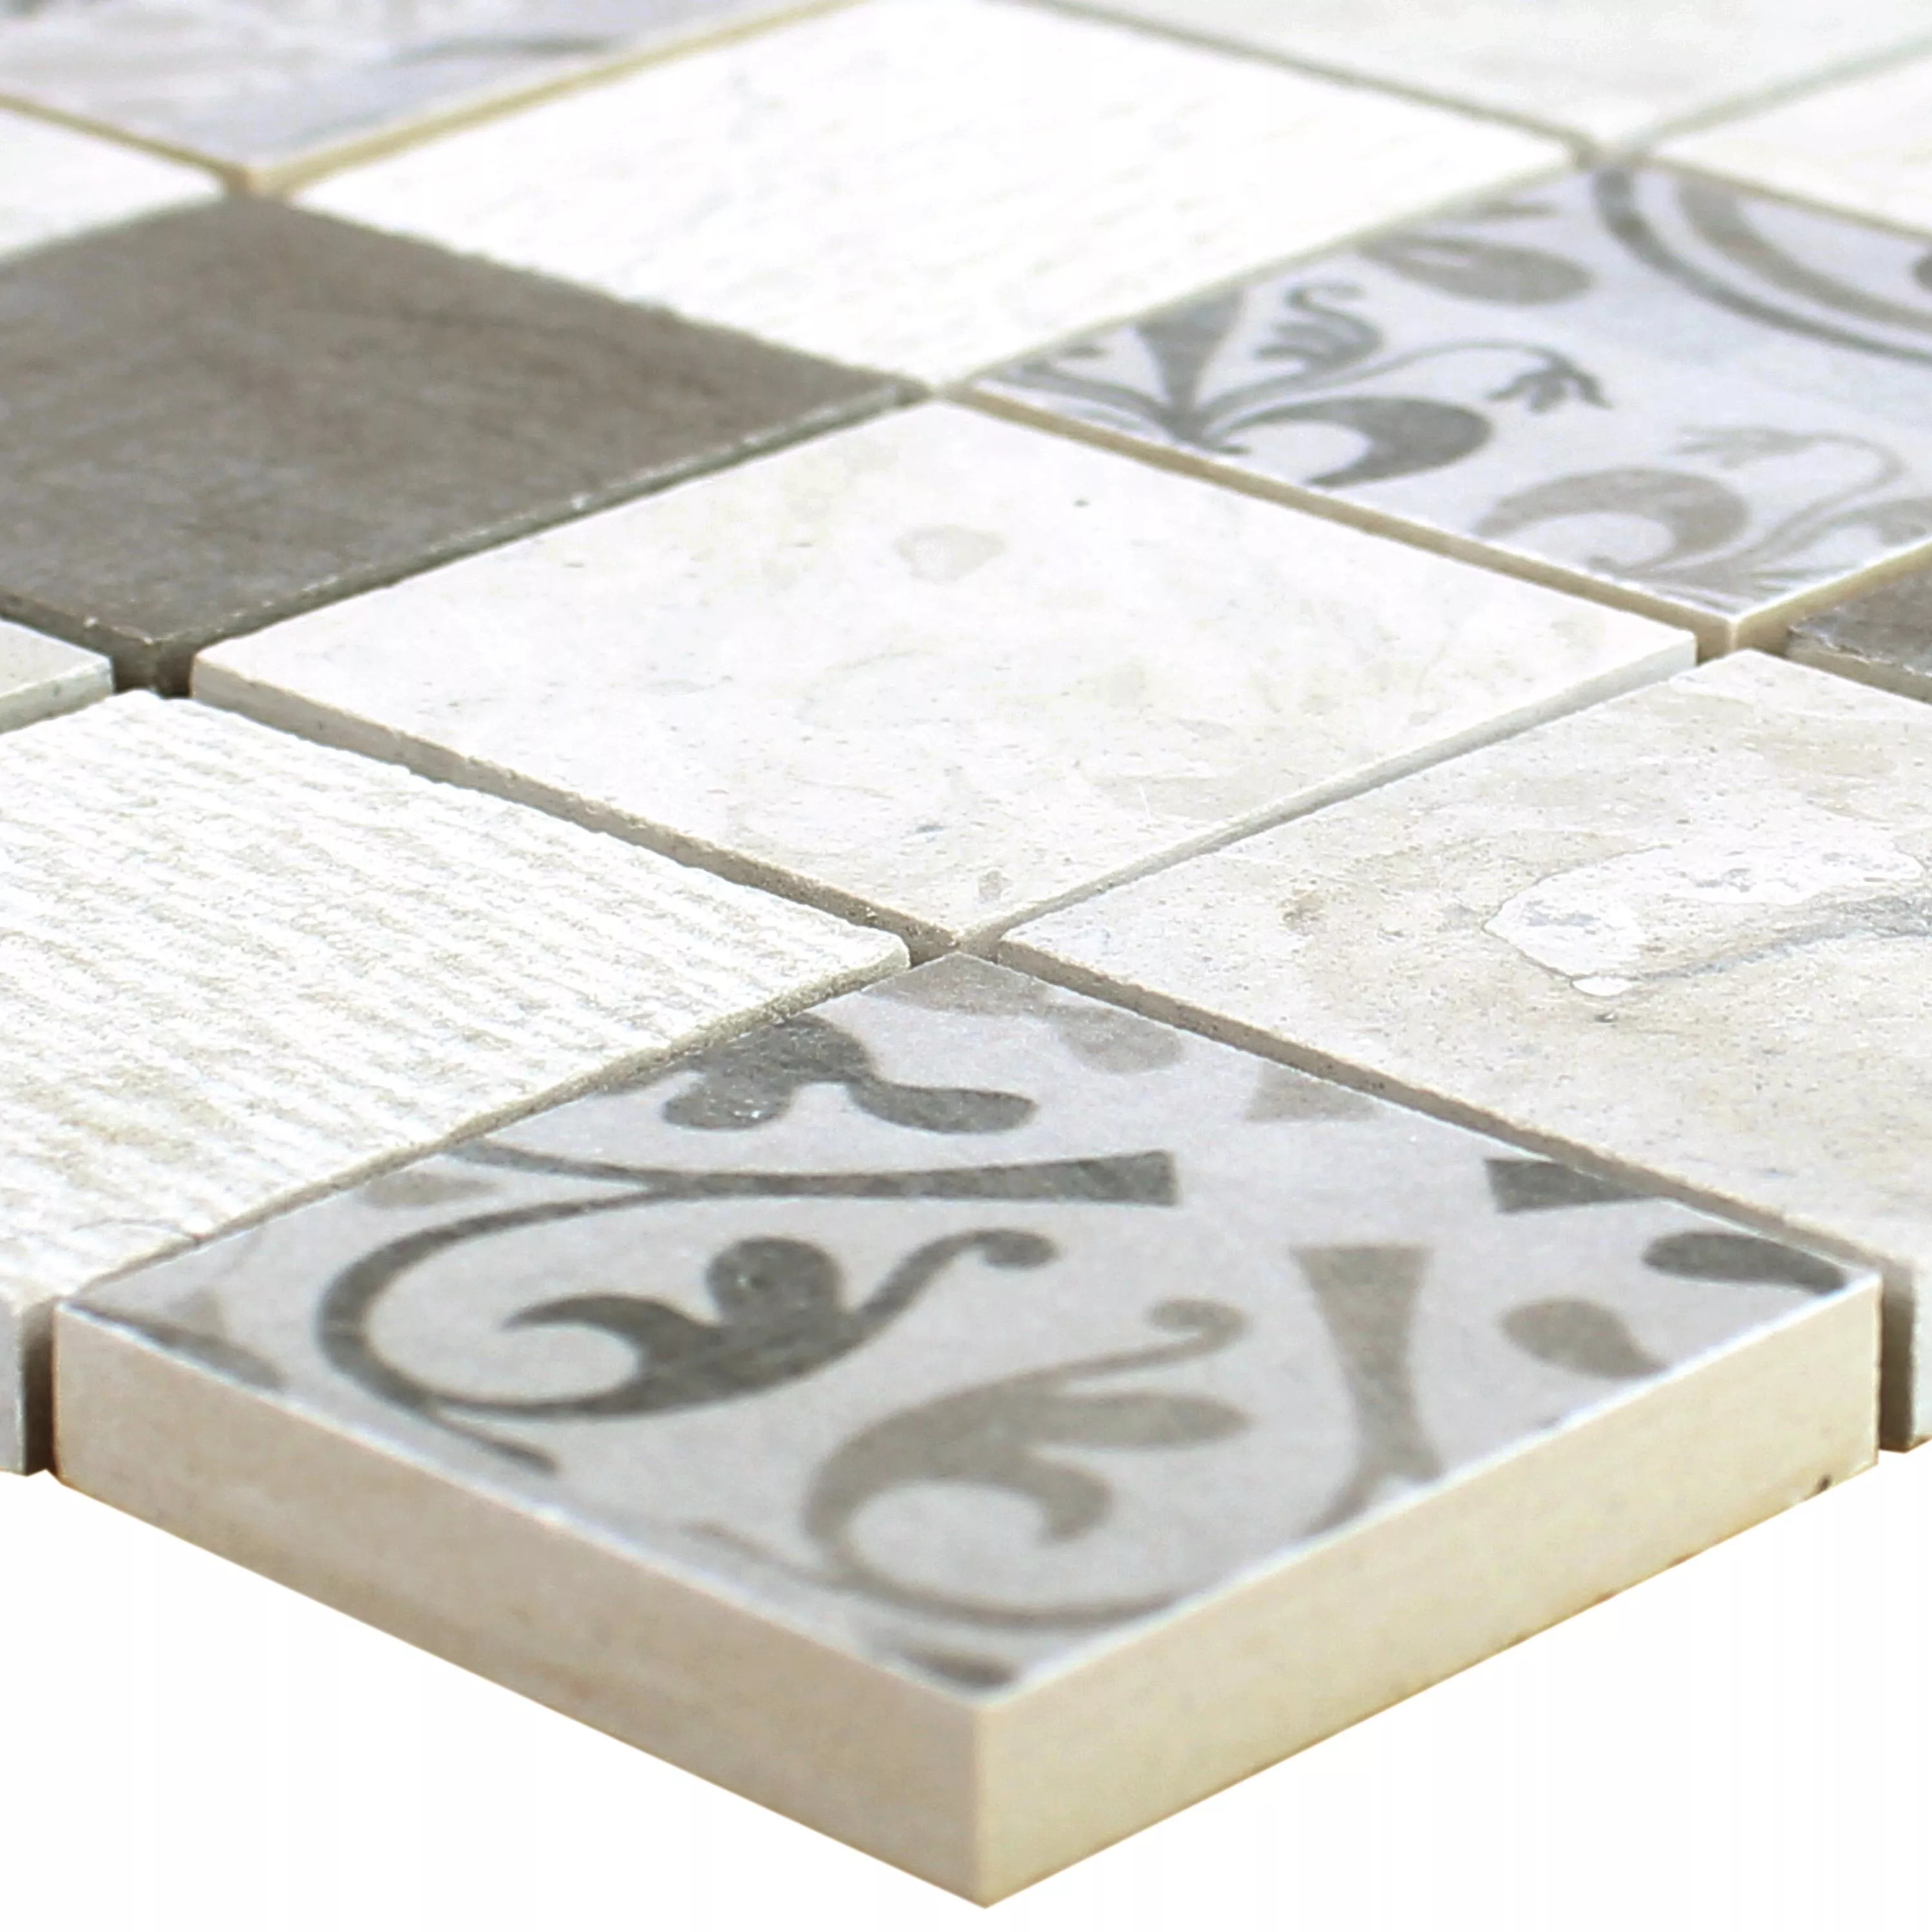 Muster von Keramik Mosaikfliesen Mythos Quadrat Grau